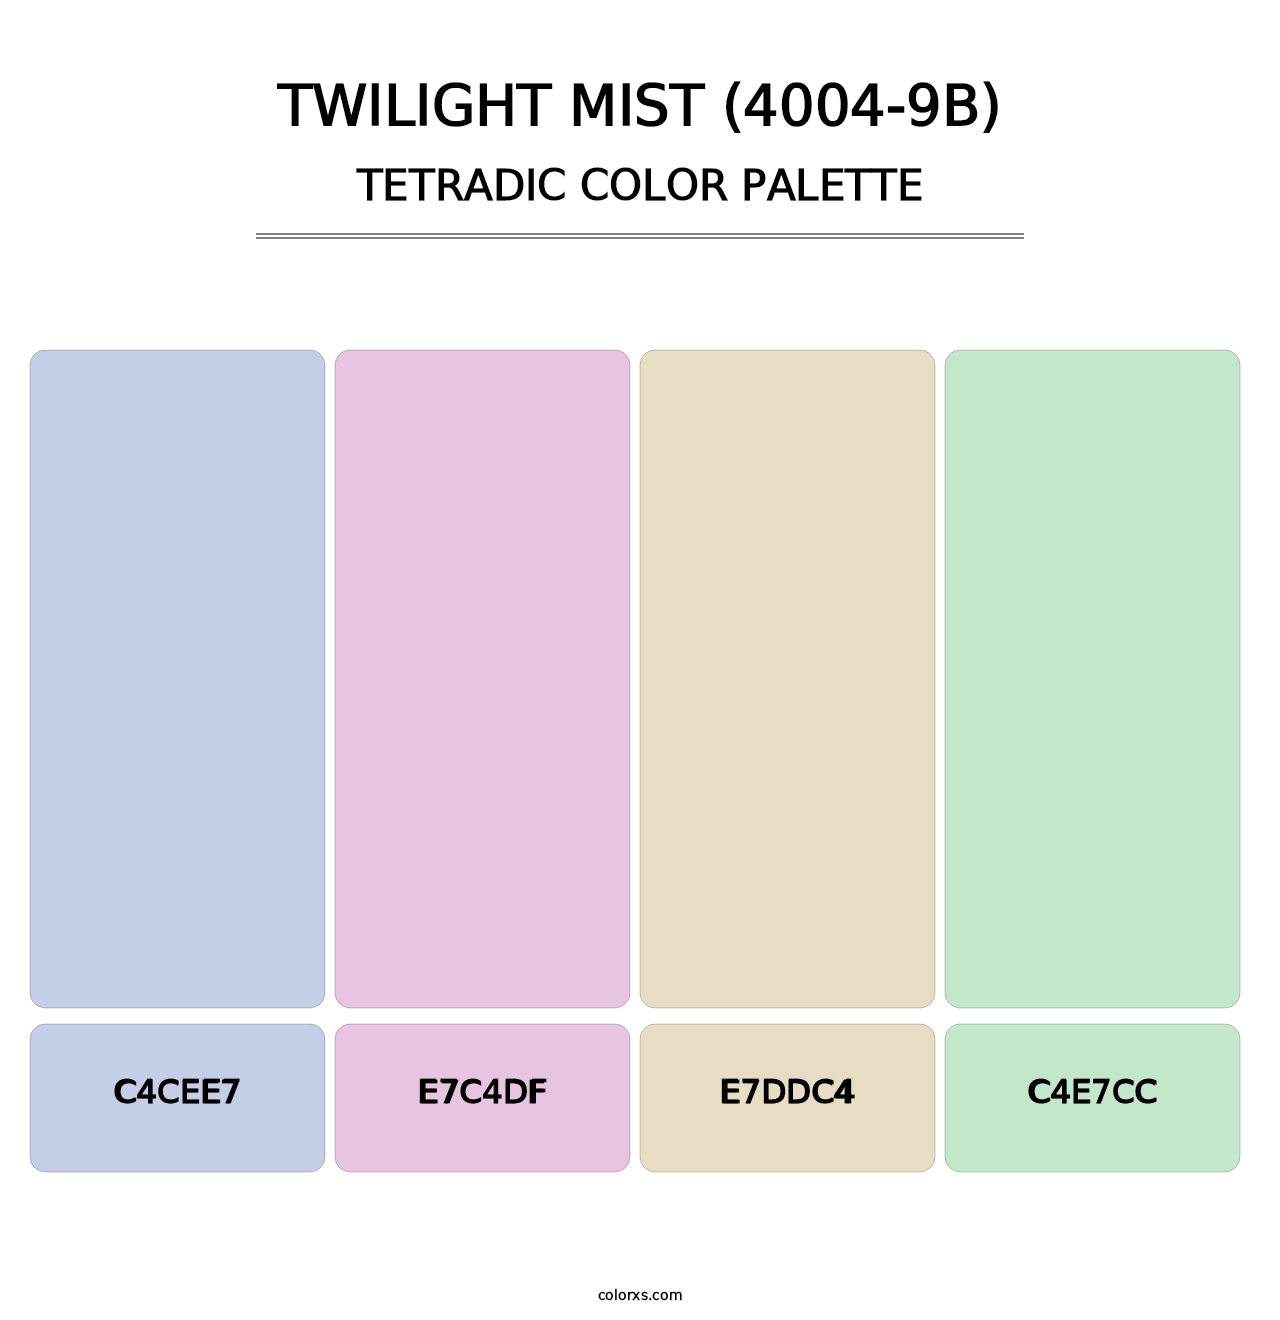 Twilight Mist (4004-9B) - Tetradic Color Palette